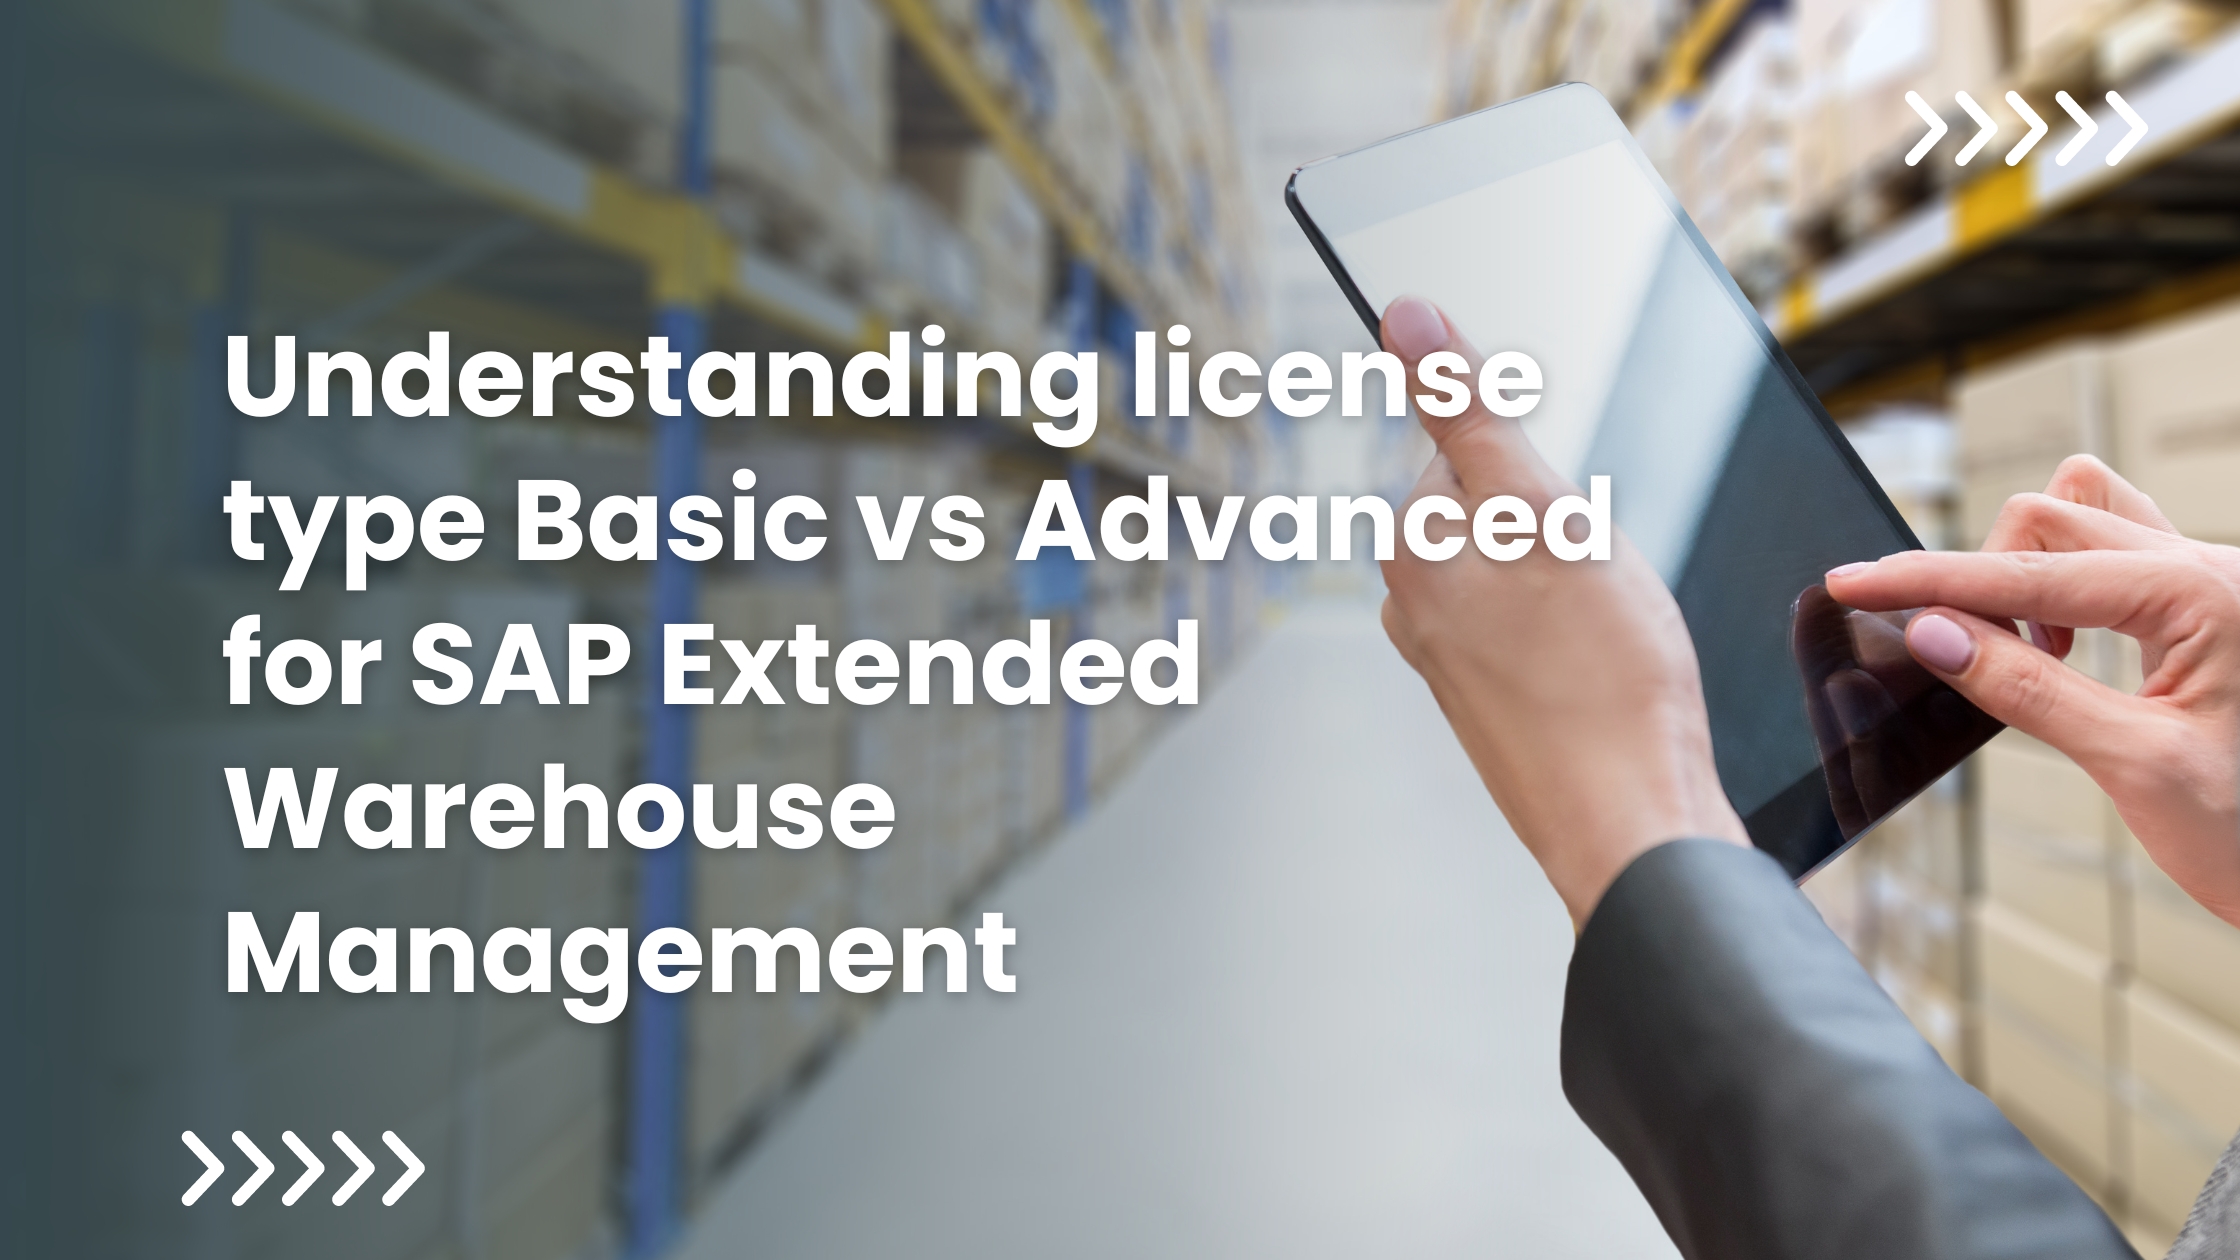 Understanding license type Basic vs Advanced for SAP Extended Warehouse Management